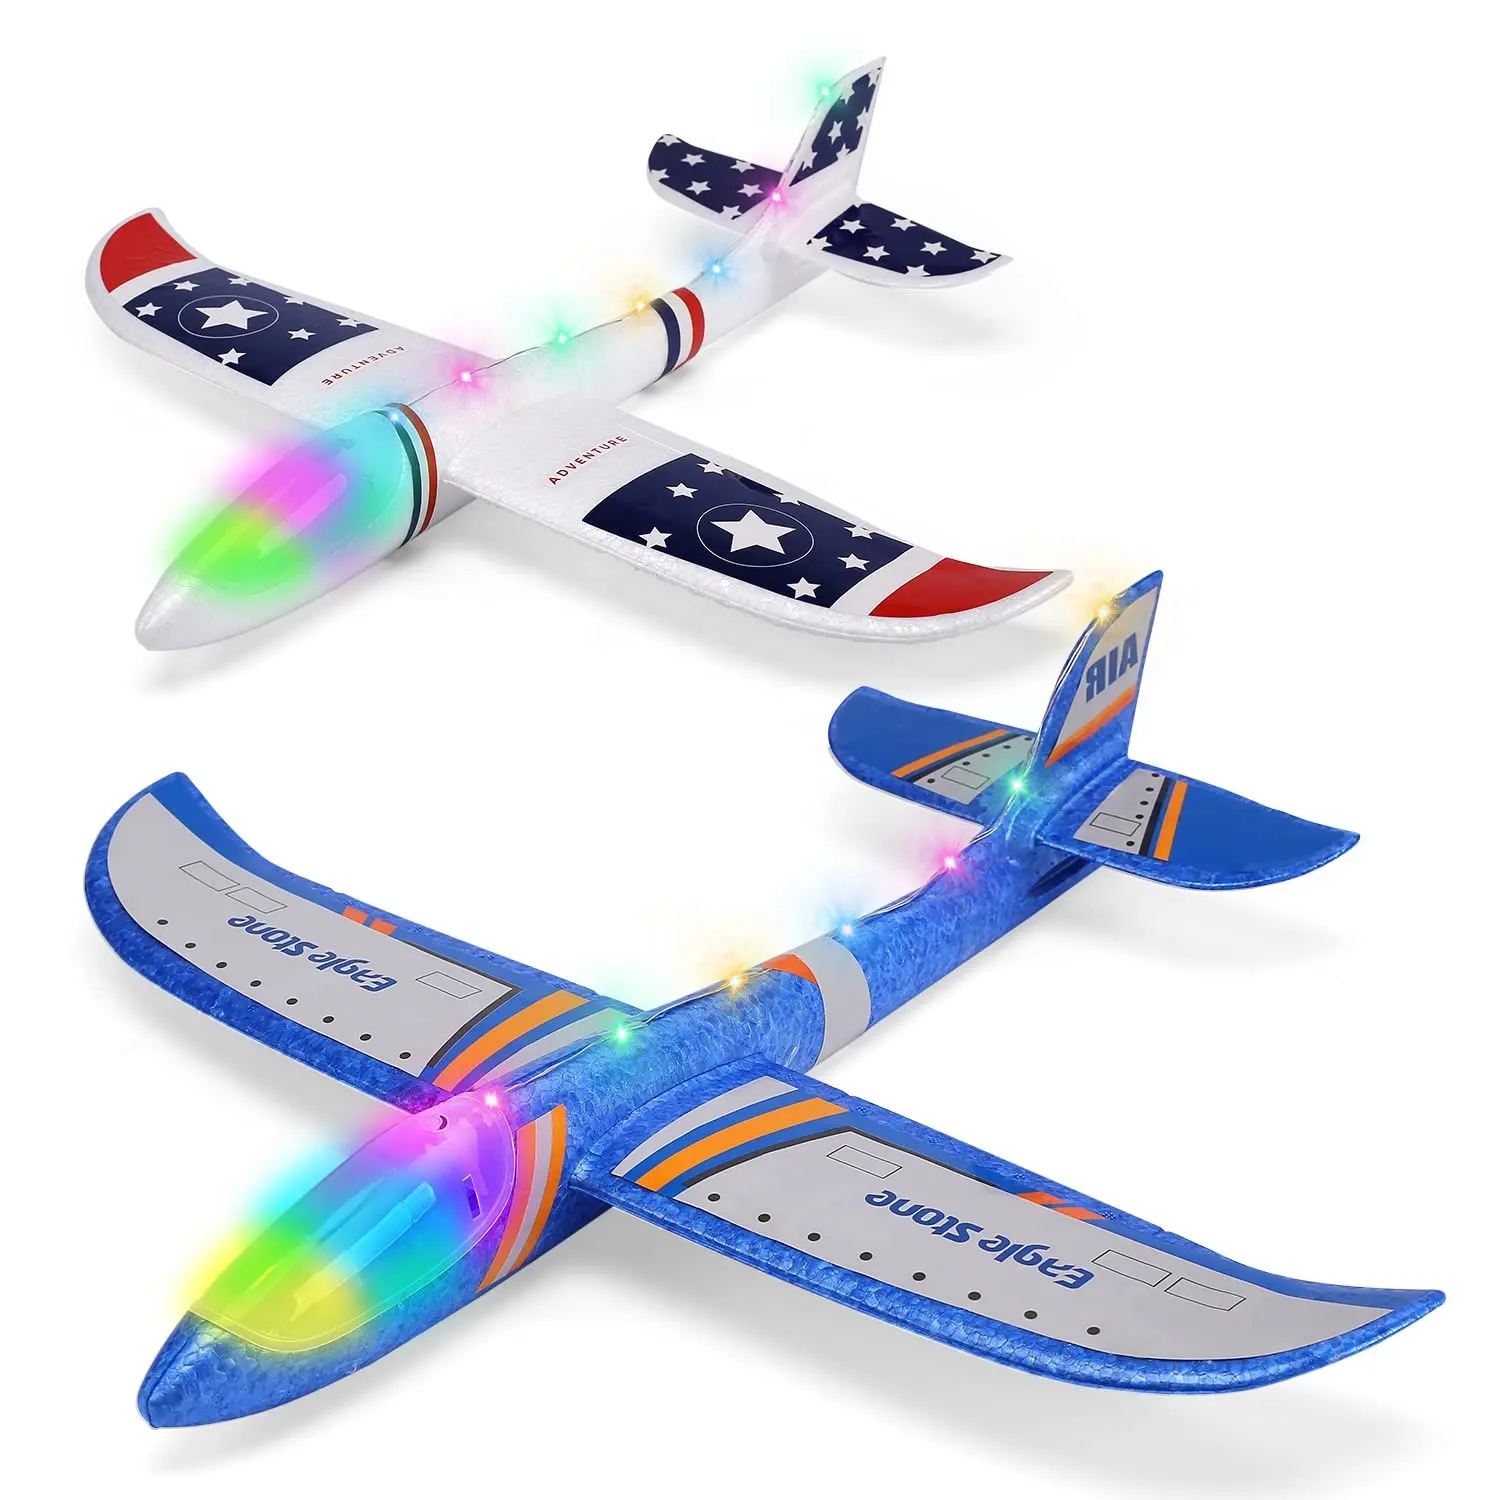 थोक खिलौने बड़ा ग्लाइडर हवाई जहाज खिलौना मैनुअल फेंकने फोम विमान मज़ा गर्मियों में आउटडोर खेल खिलौने फ्लाई फोम हवाई जहाज के लिए बच्चों